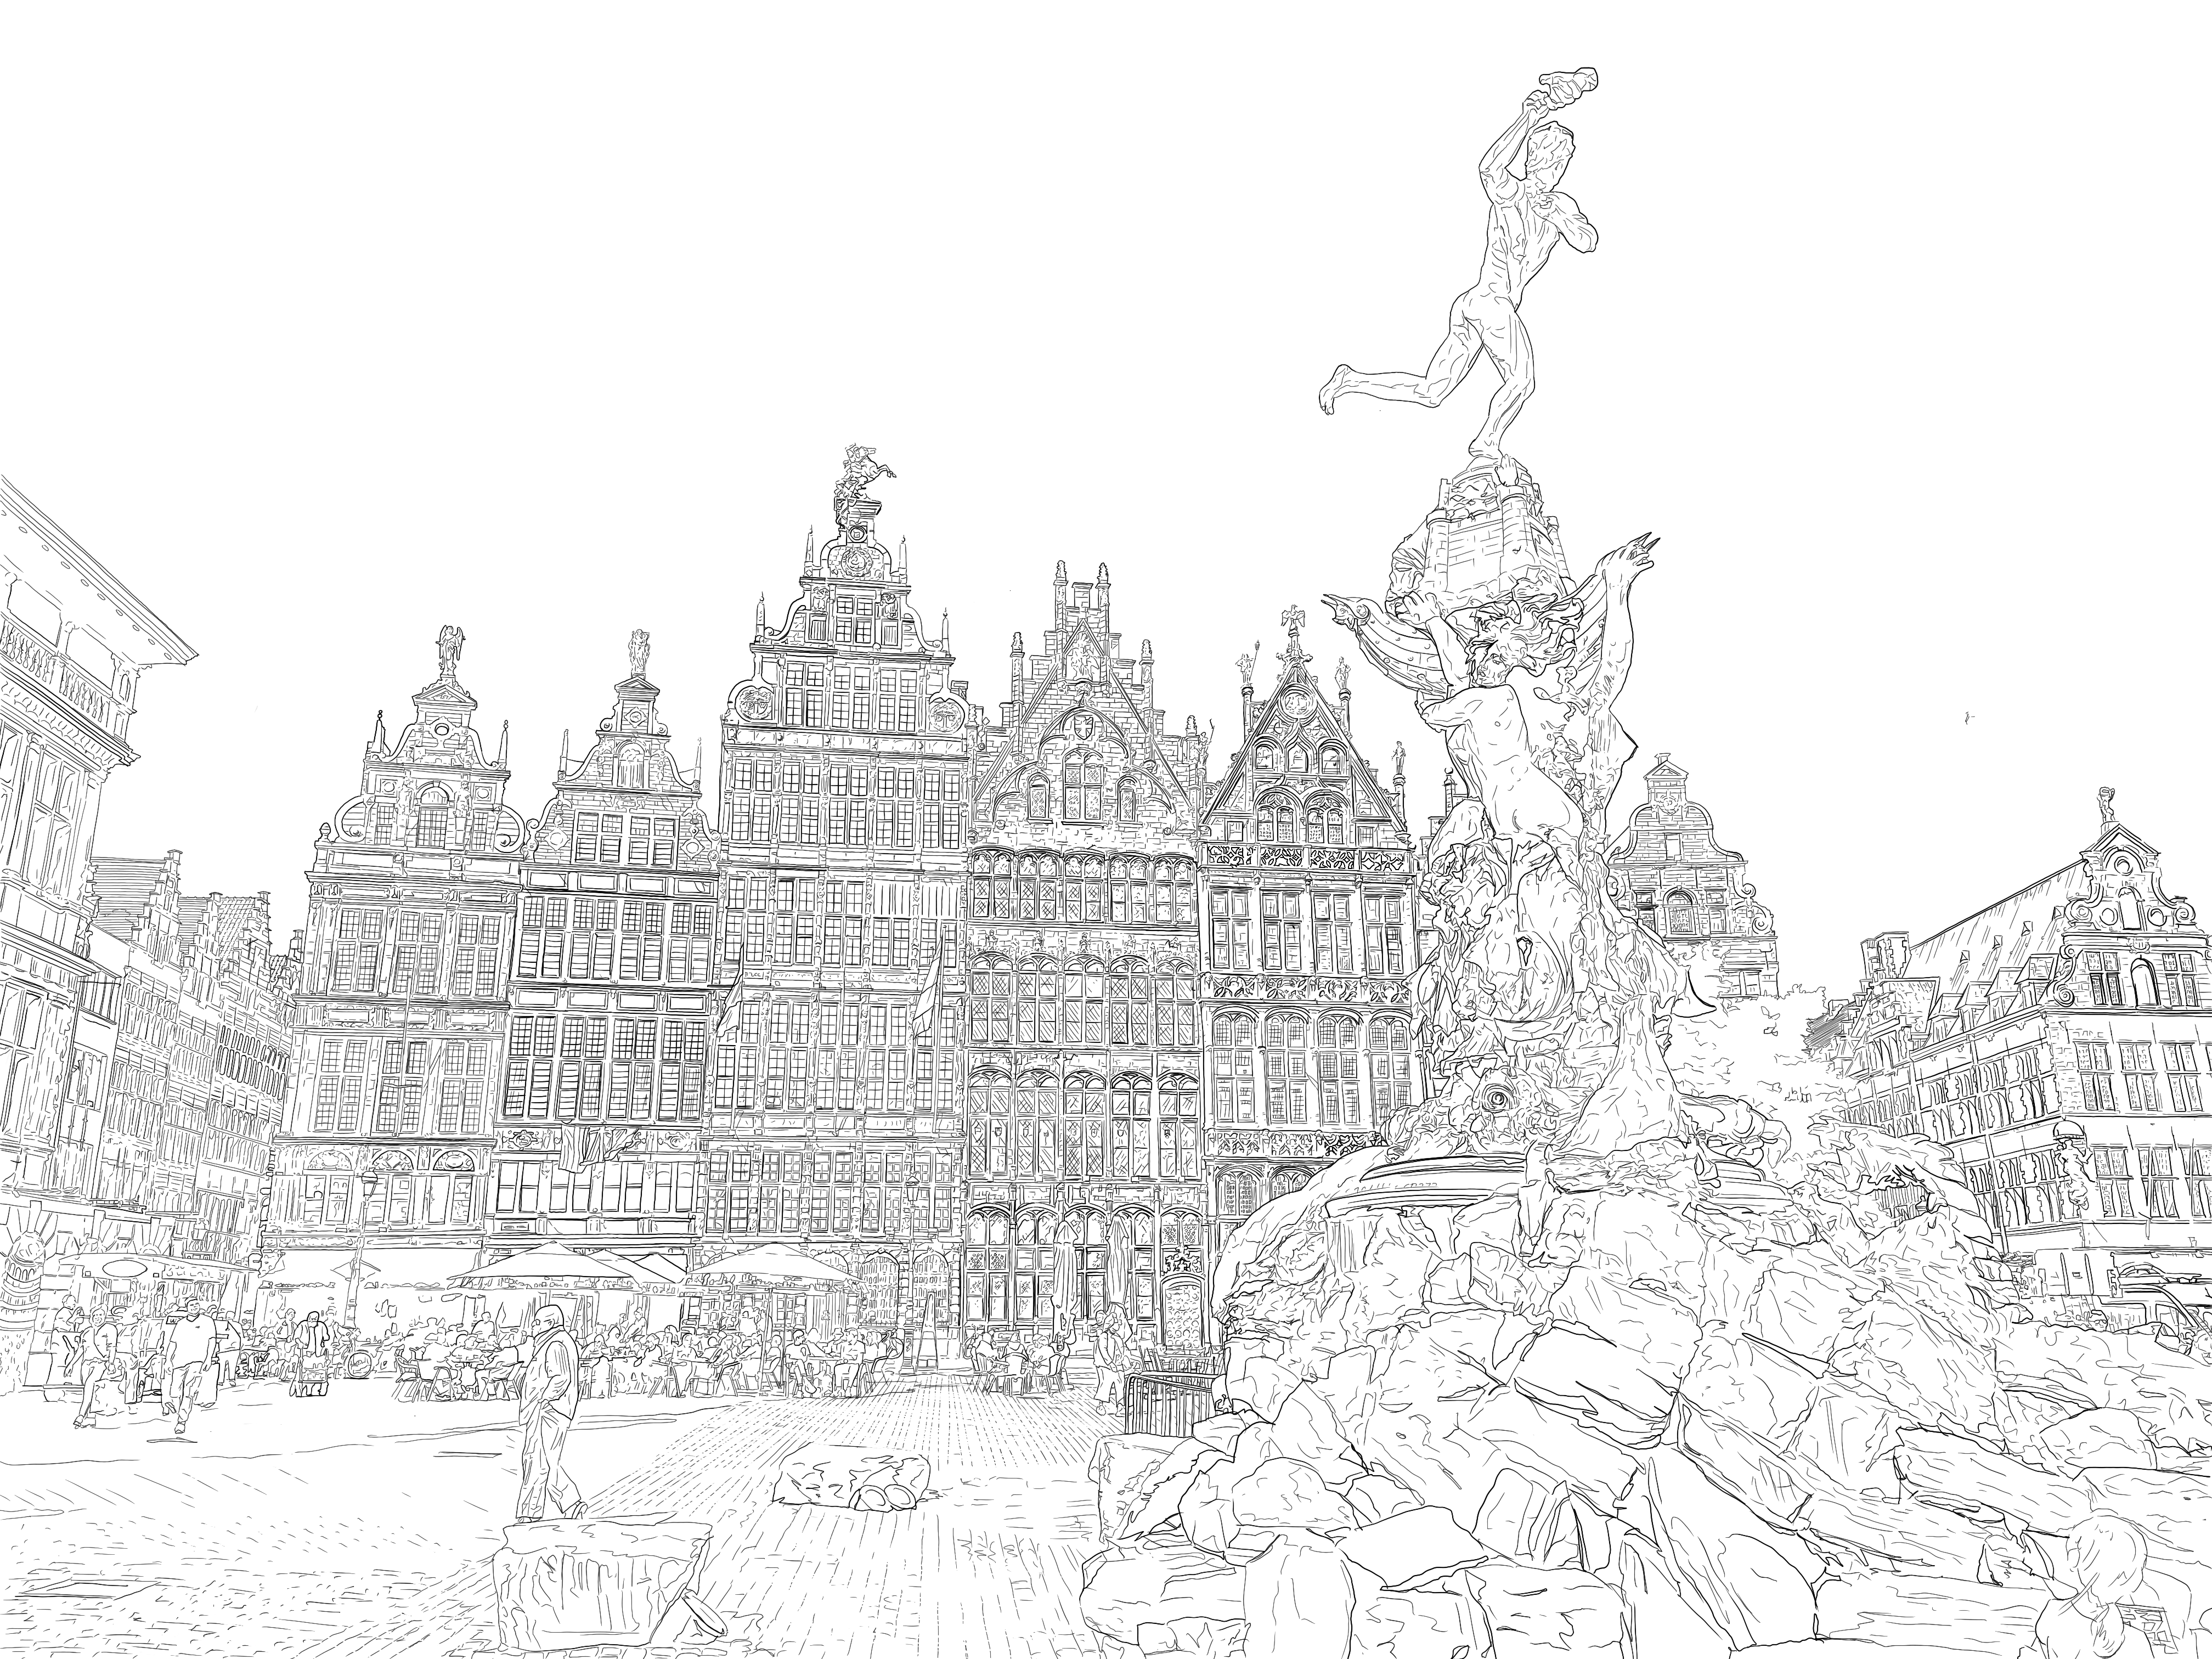 Digital drawing of Antwerp